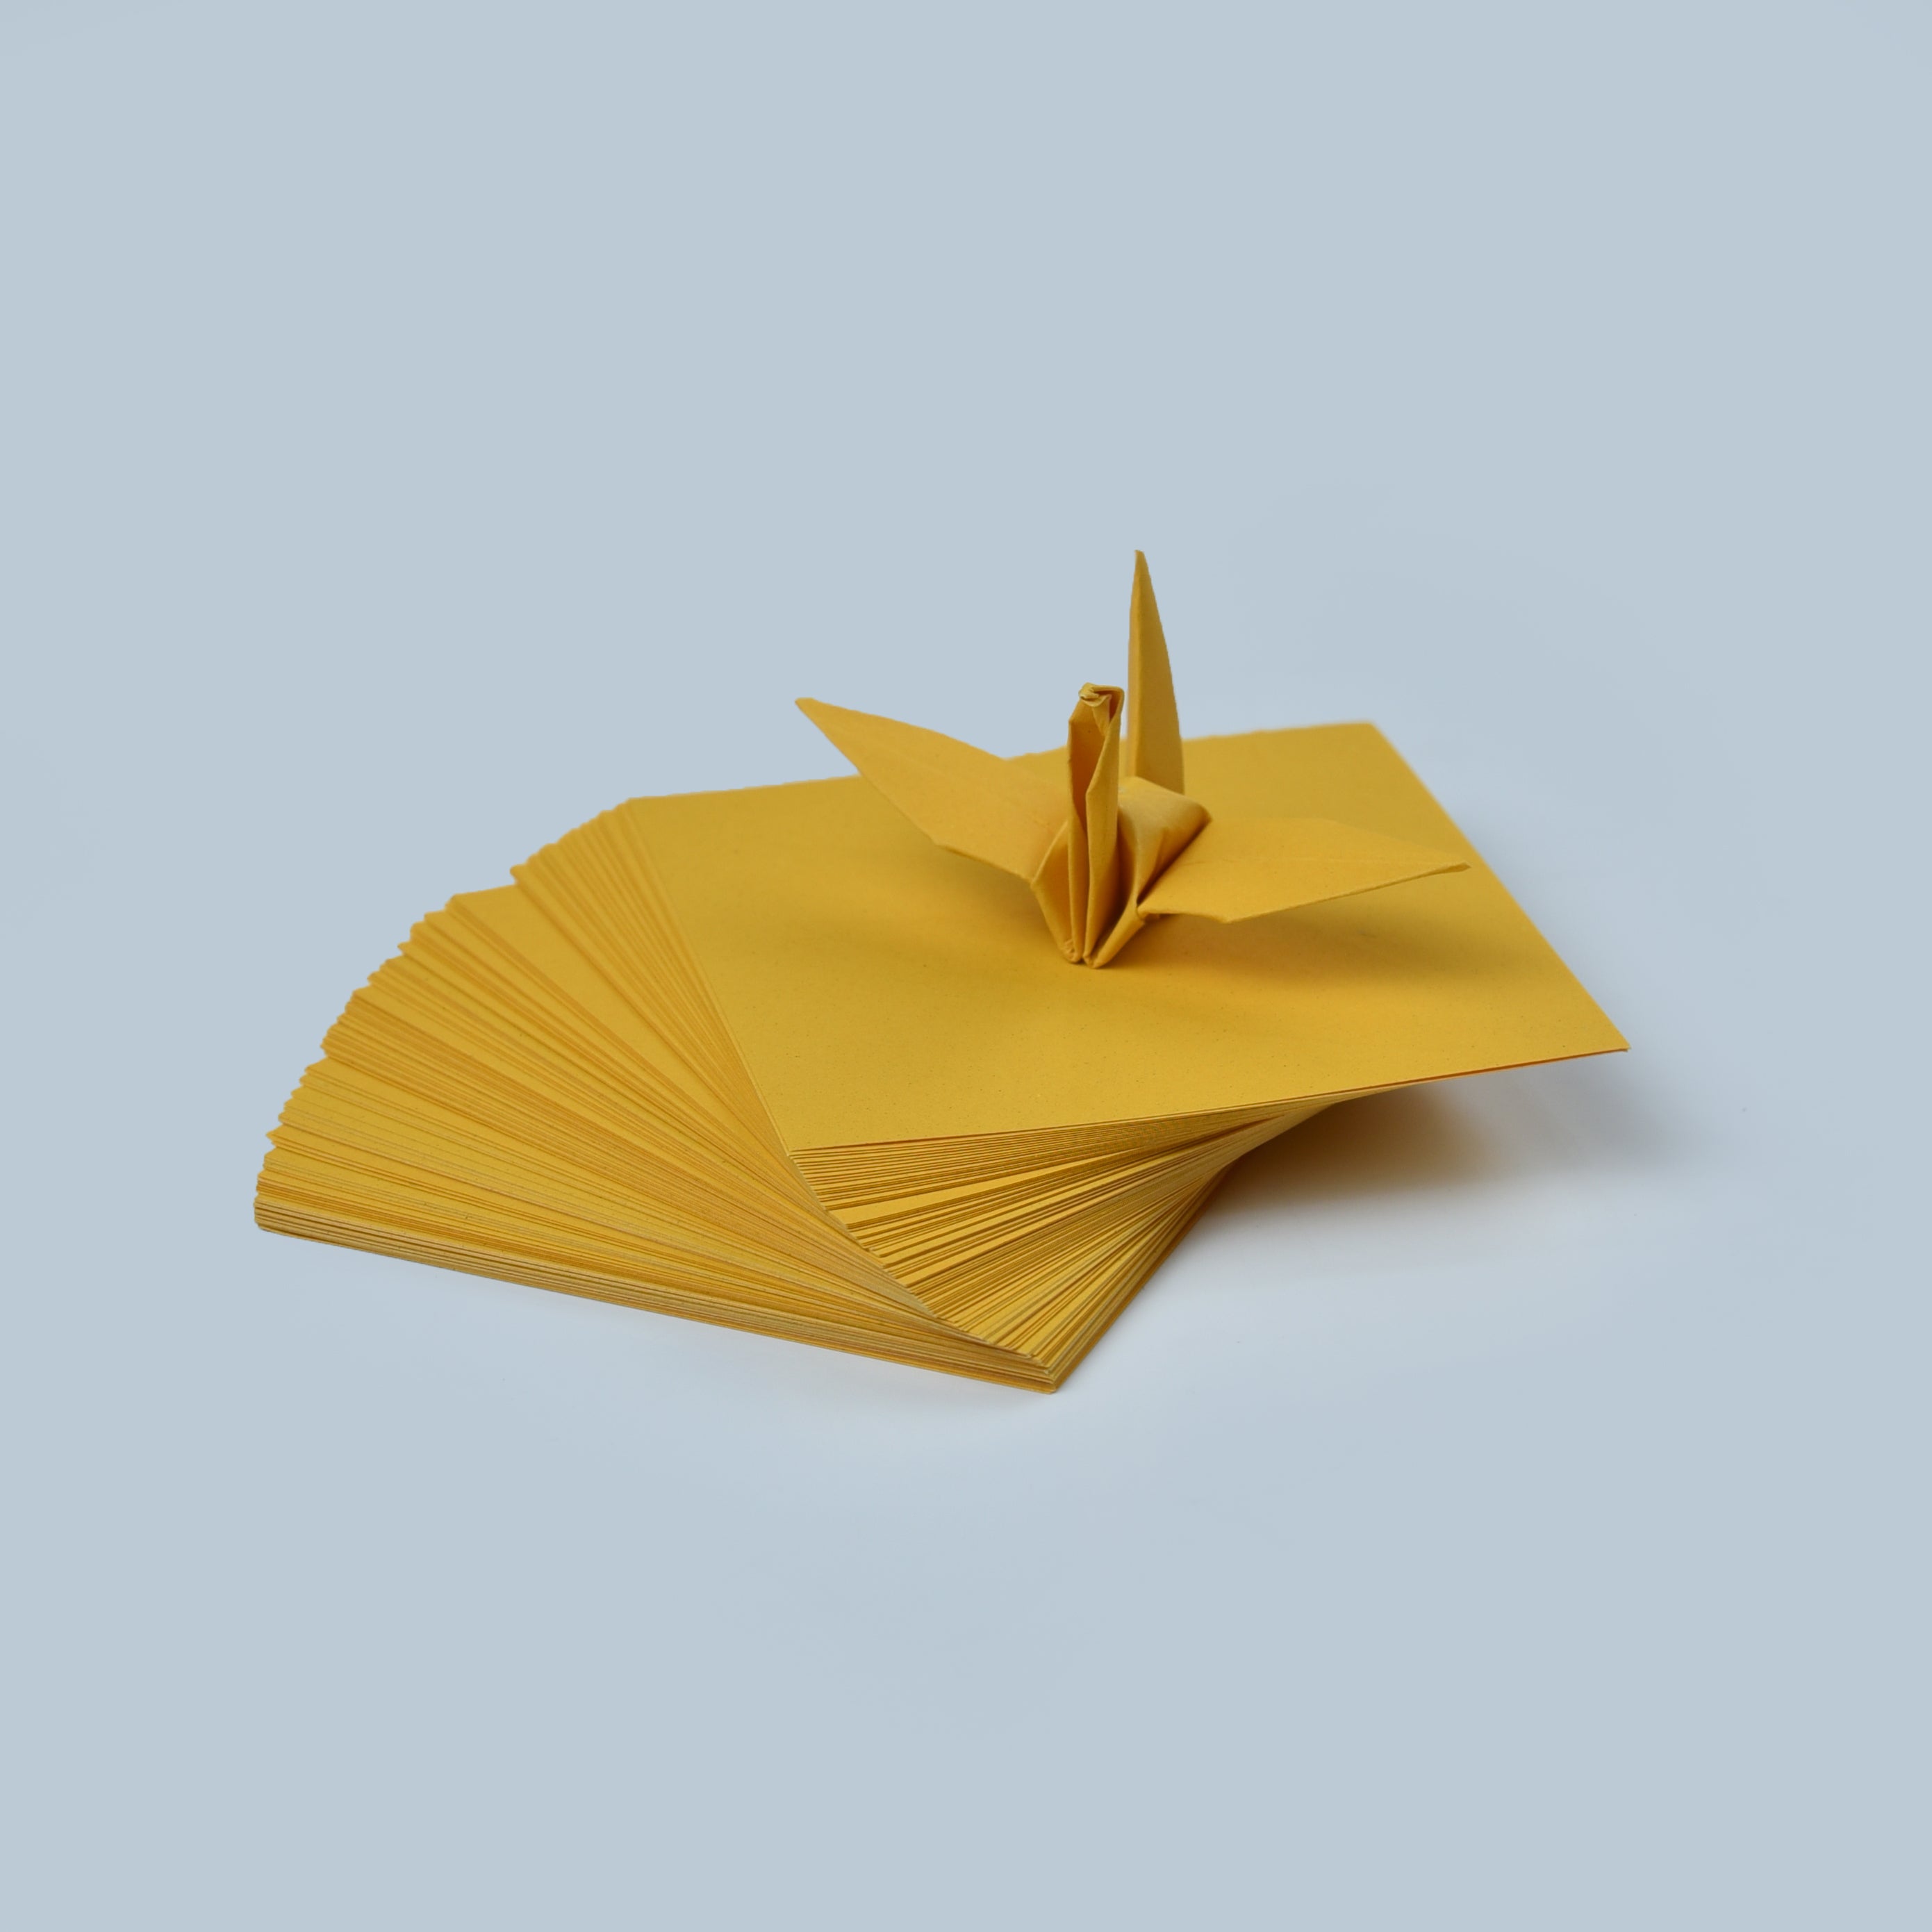 100 Hojas de Papel Origami - 3x3 pulgadas - Paquete de Papel Cuadrado para Plegar, Grullas de Origami y Decoración - S26